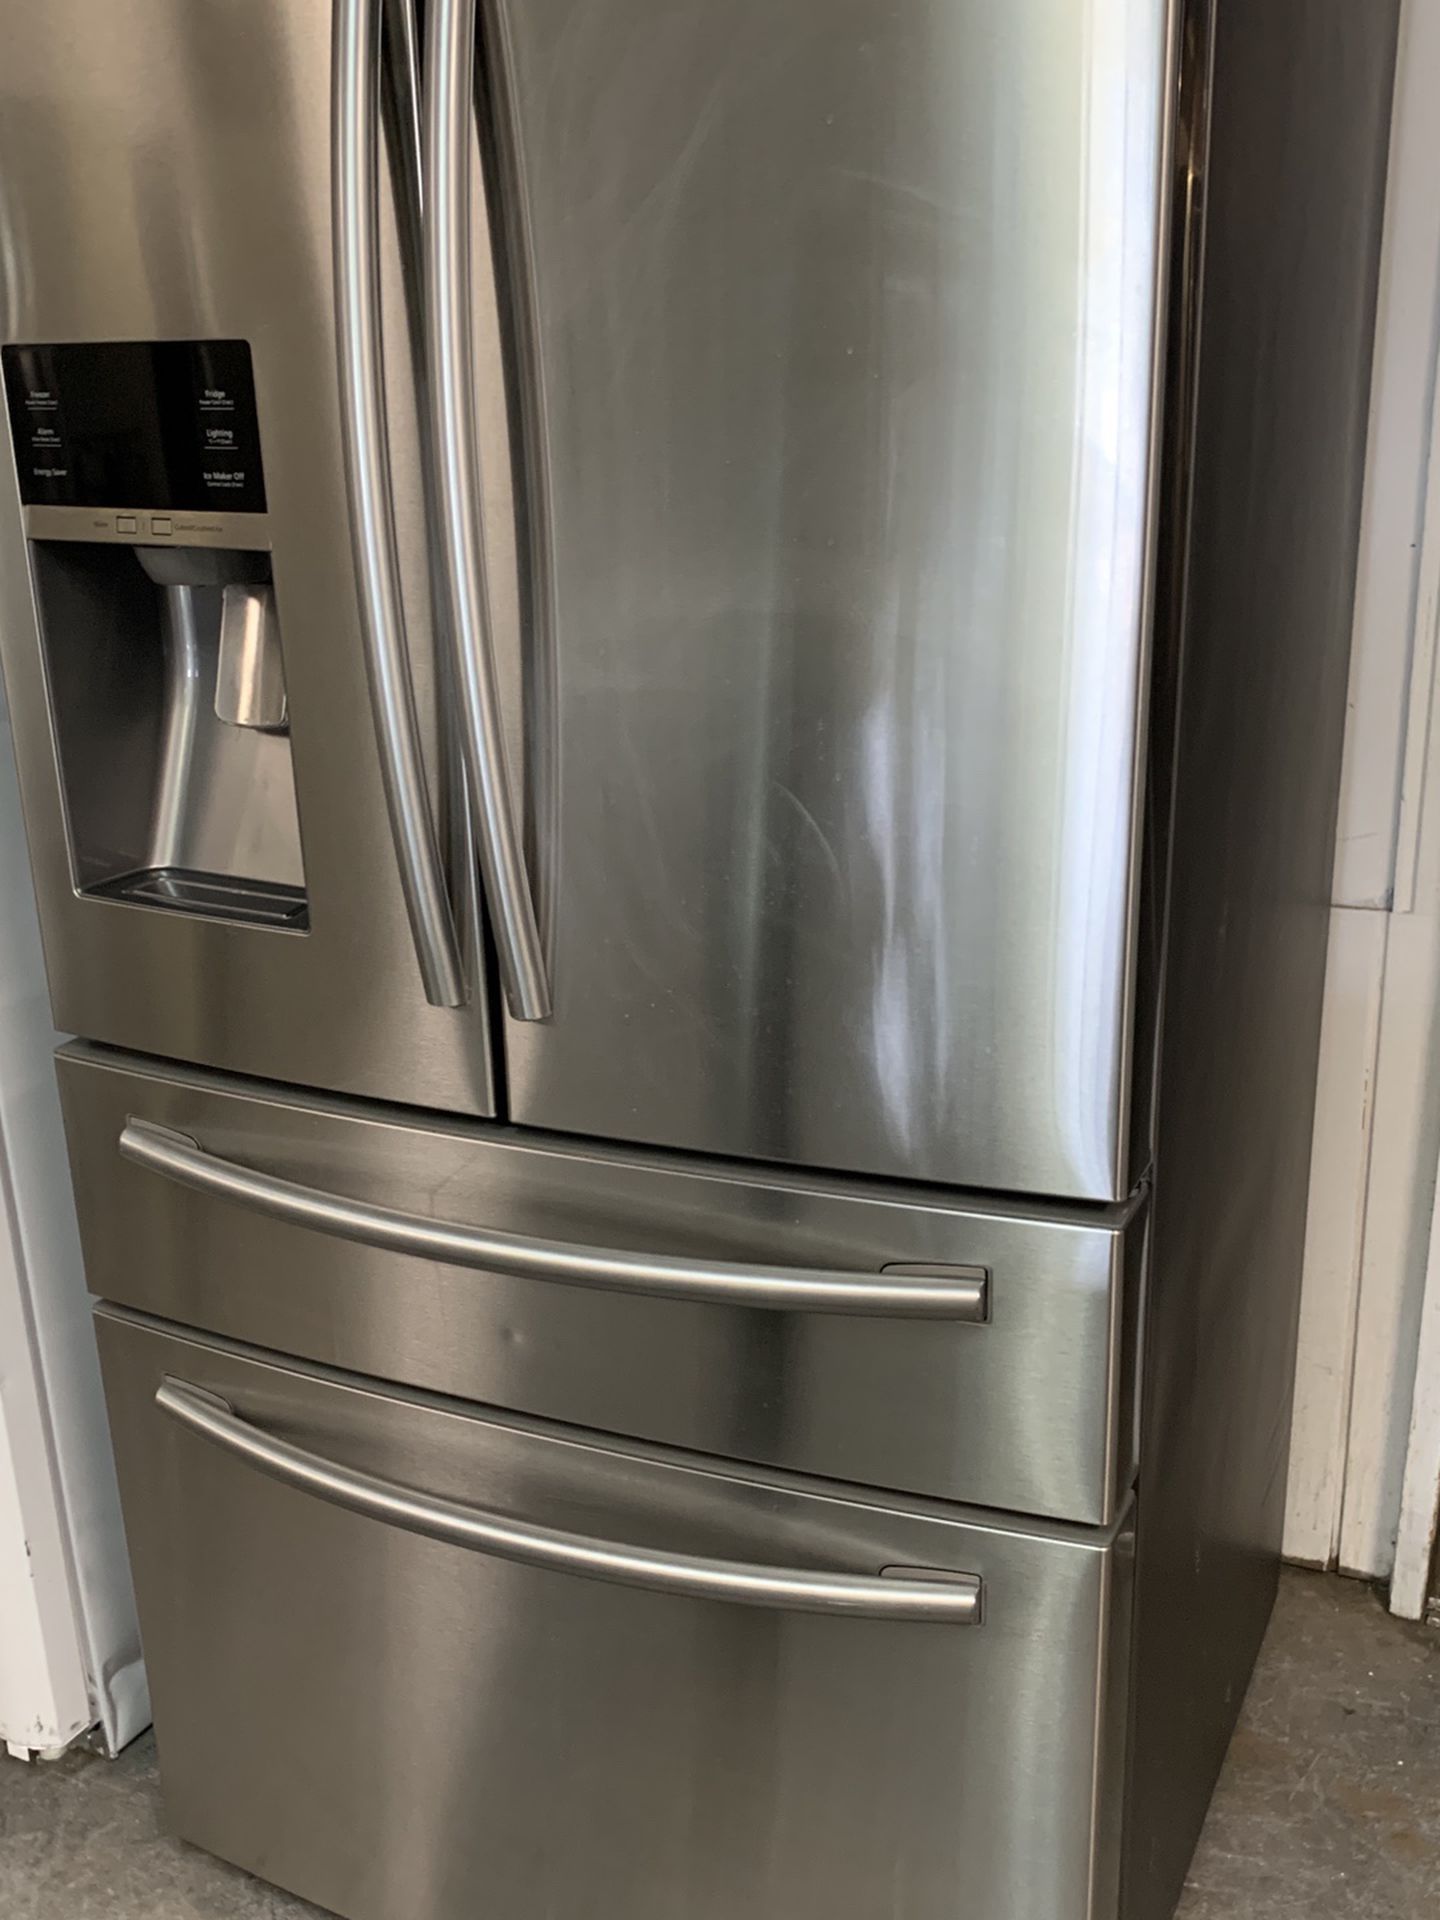 Samsung 4 Door Stainless Steel Refrigerator 36” Wide